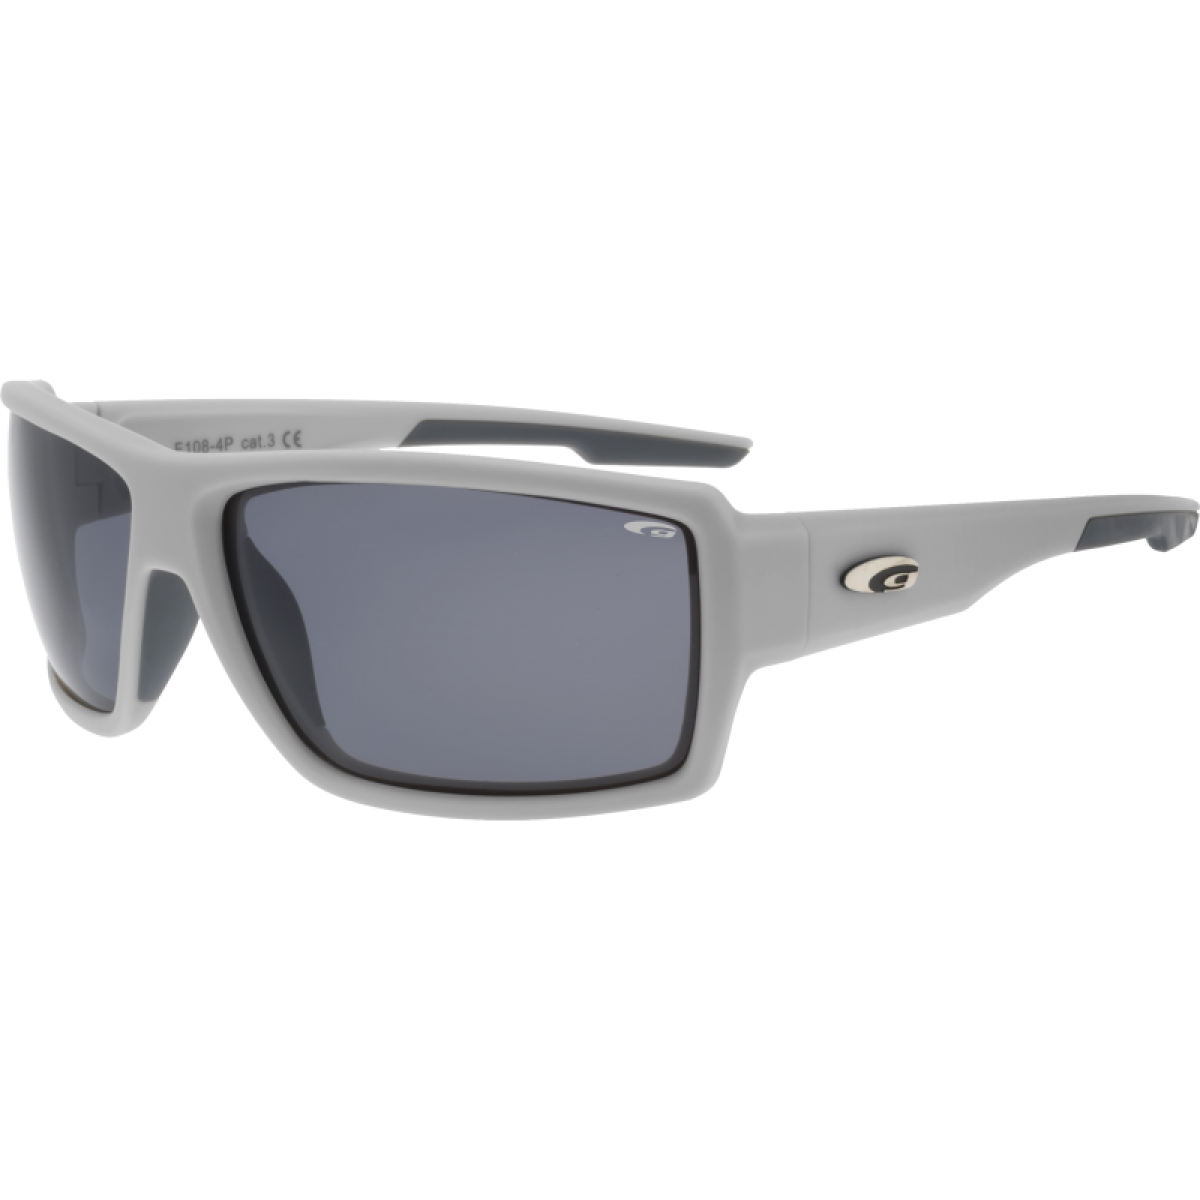 Слънчеви поляризирани очила E108-4P GOGGLE - изглед 1